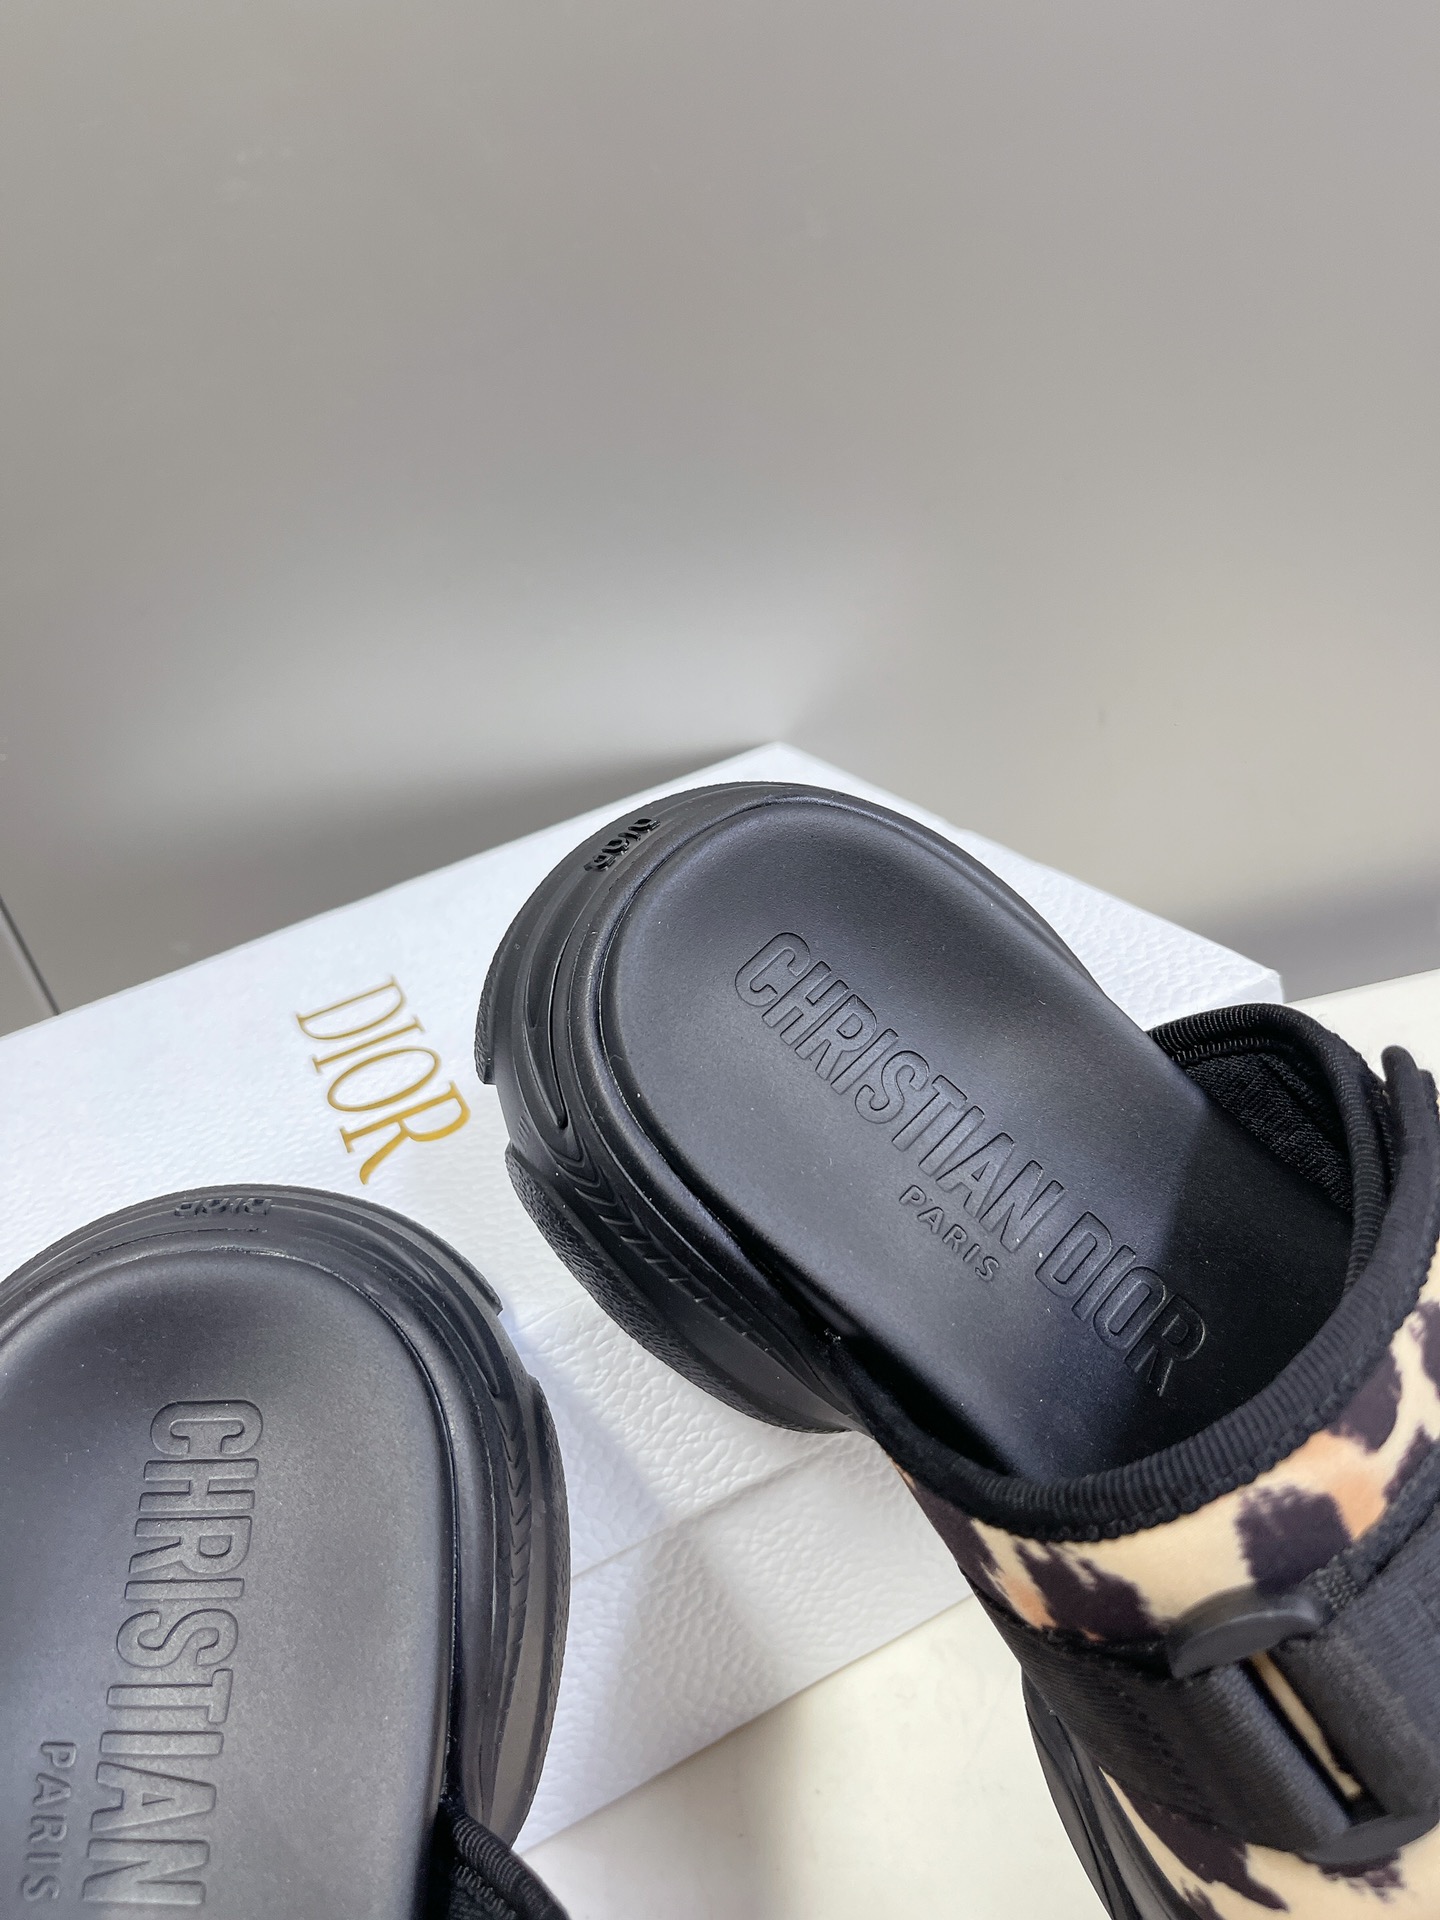 Dior迪奥经典凉拖鞋系列全新色系市面最高版本原版复刻一比一材料定制设计理念凉鞋加运动鞋元素搭配组合️款